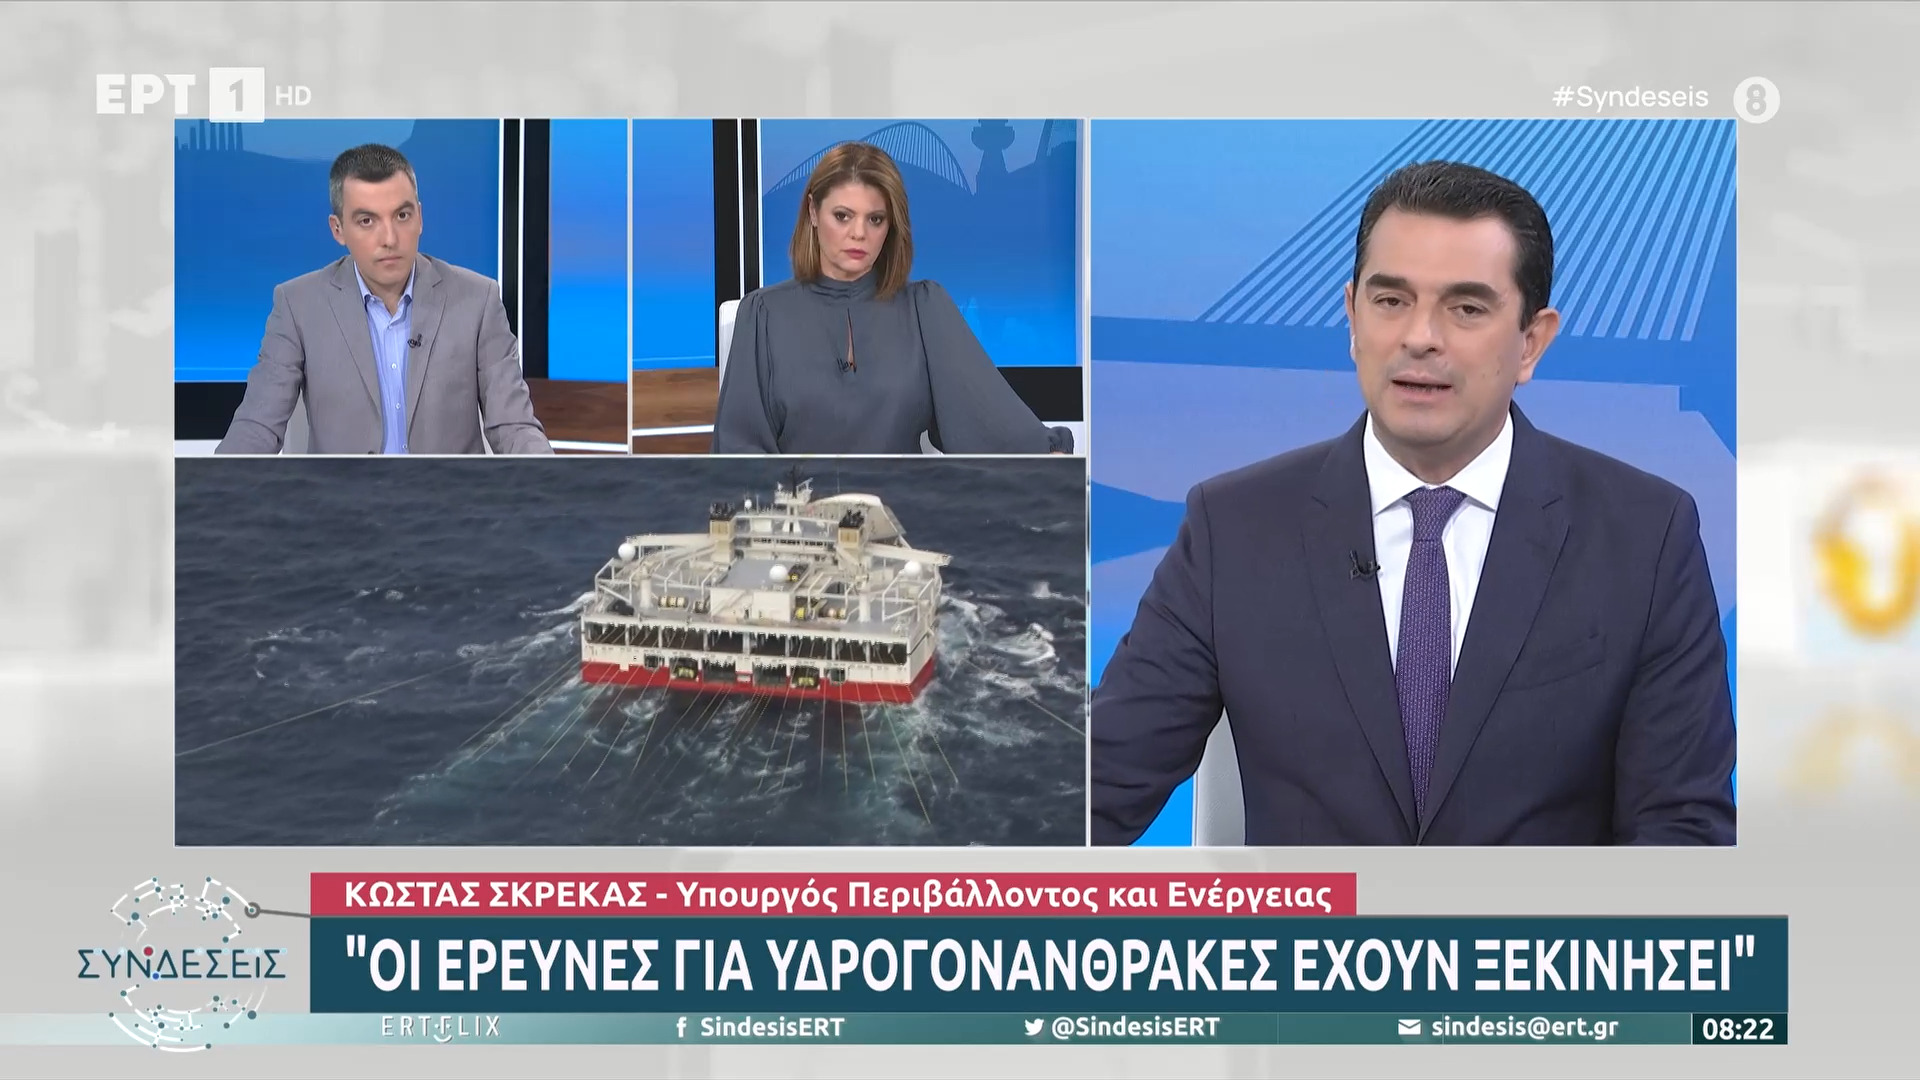 Σκρέκας στην ΕΡΤ: Ξεκίνησαν οι έρευνες για υδρογονάνθρακες ανάμεσα σε Κρήτη και Πελοπόννησο